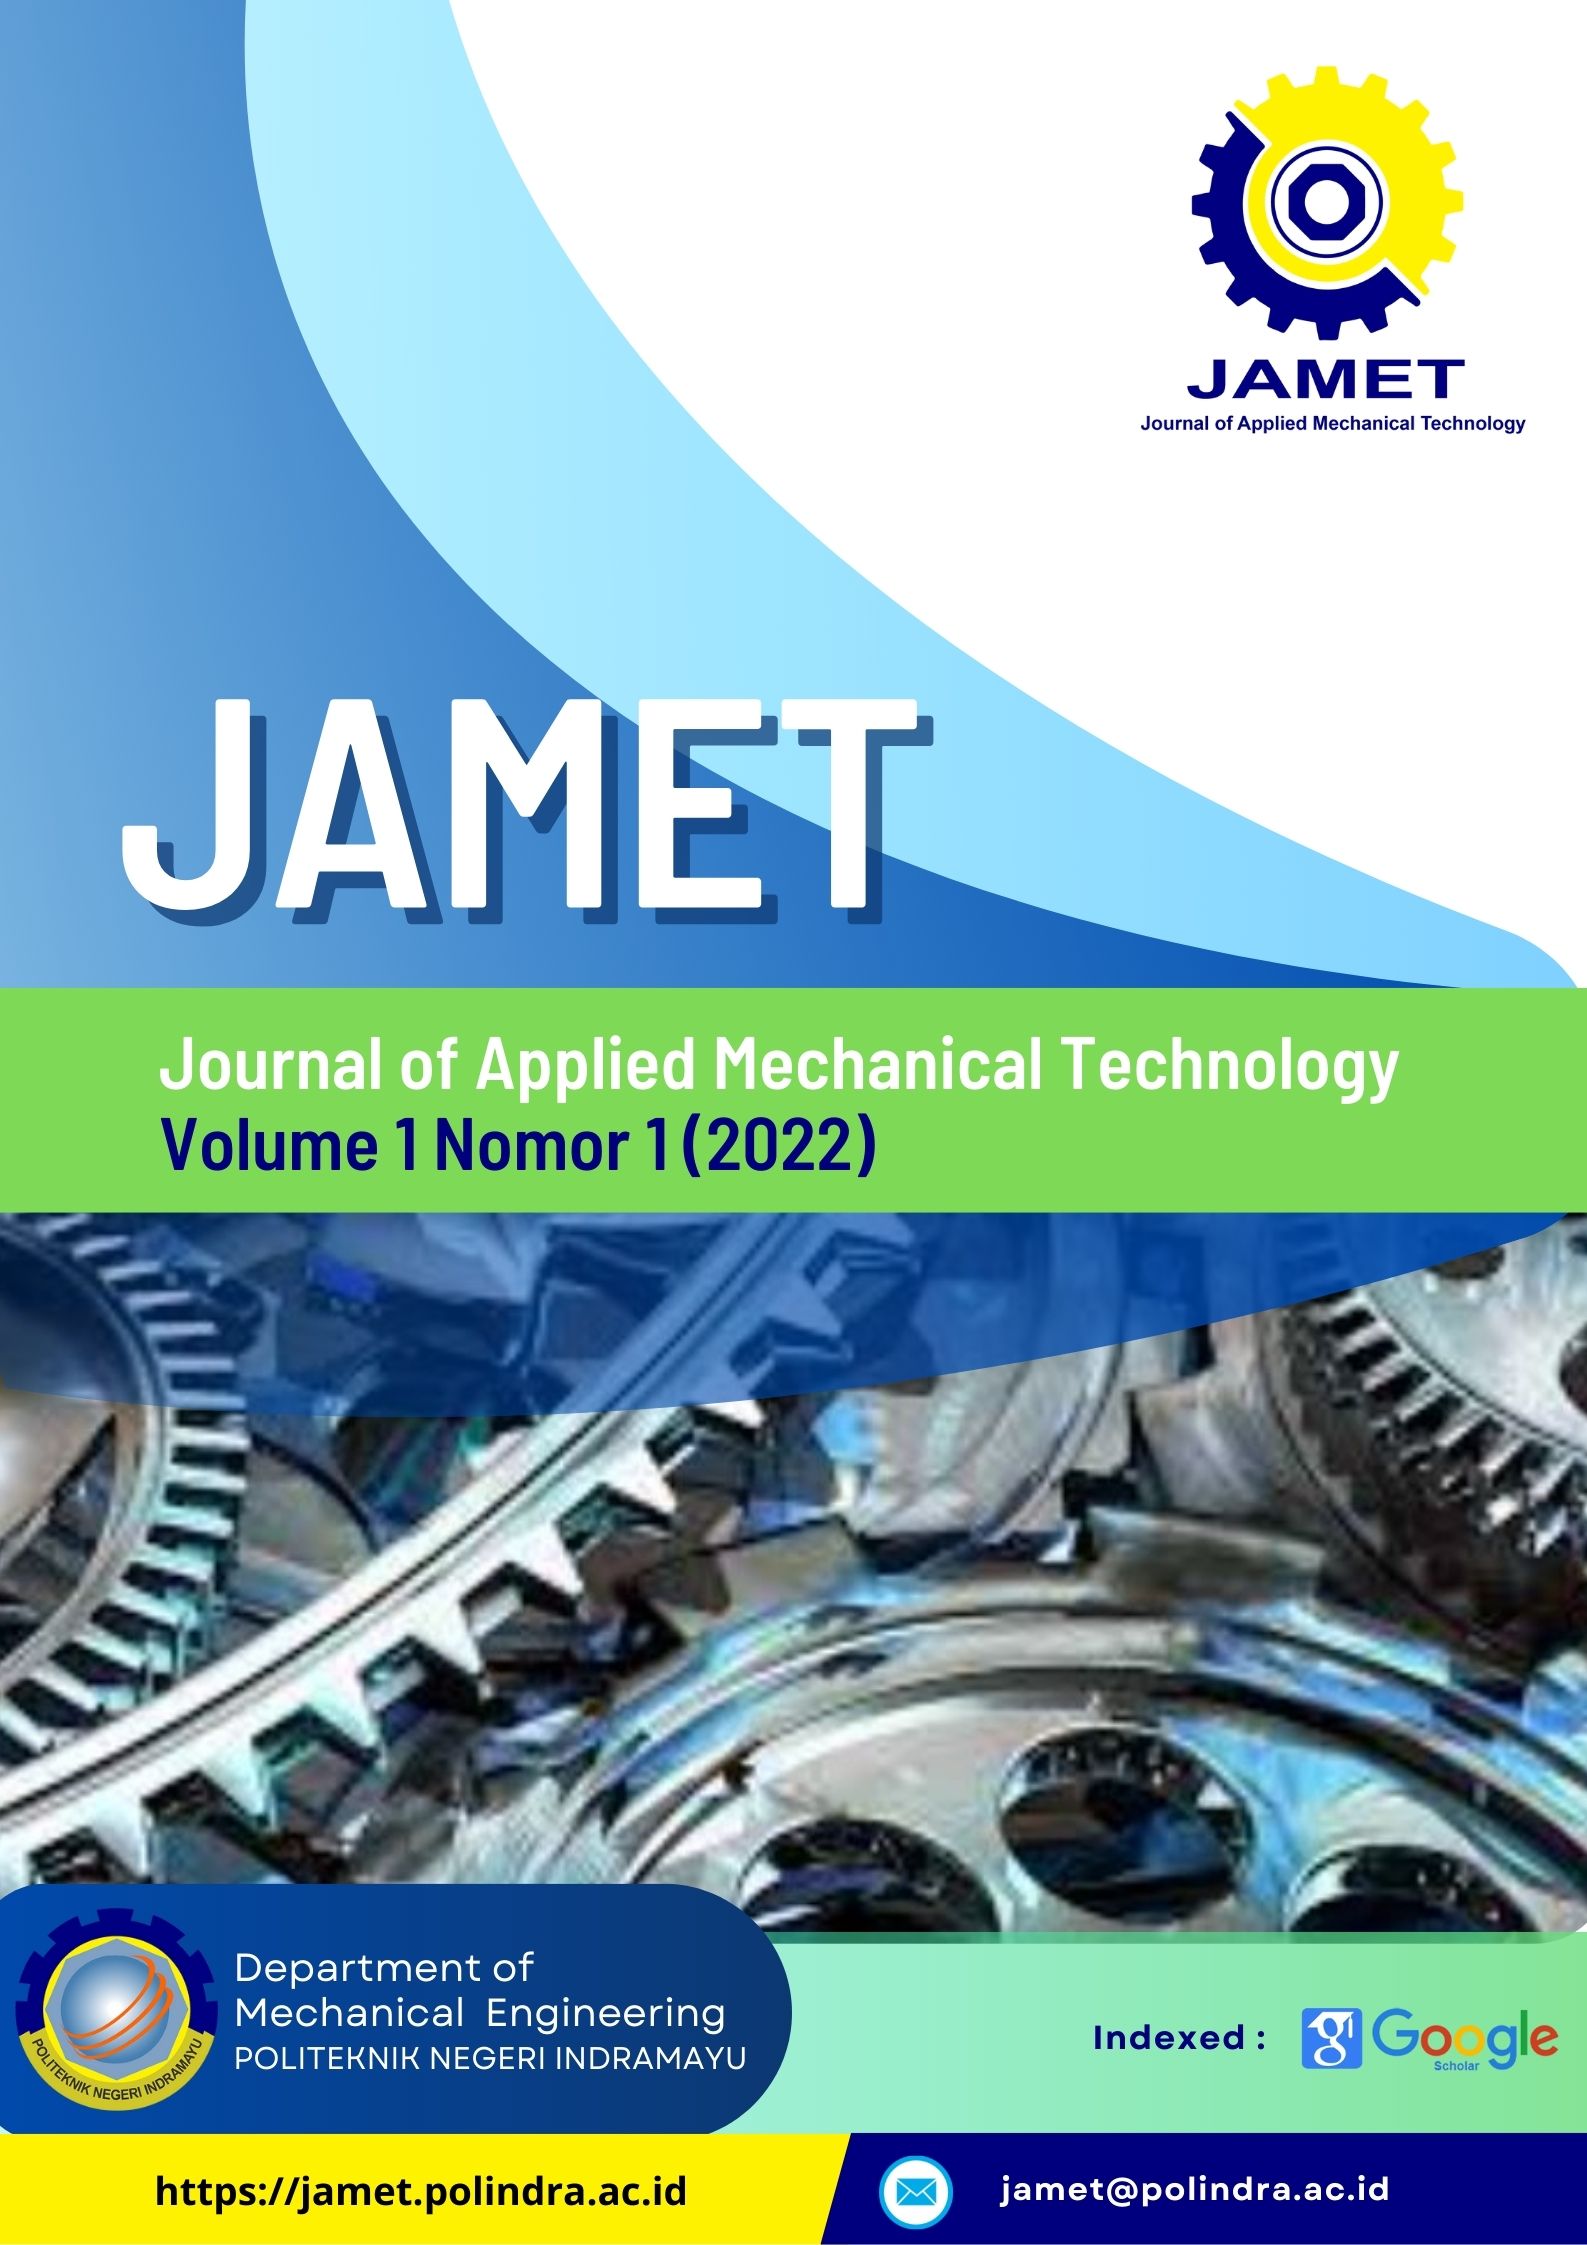 Vol 1 No. 1 2022 Journal of Applied Mechanical Technology (JAMET)